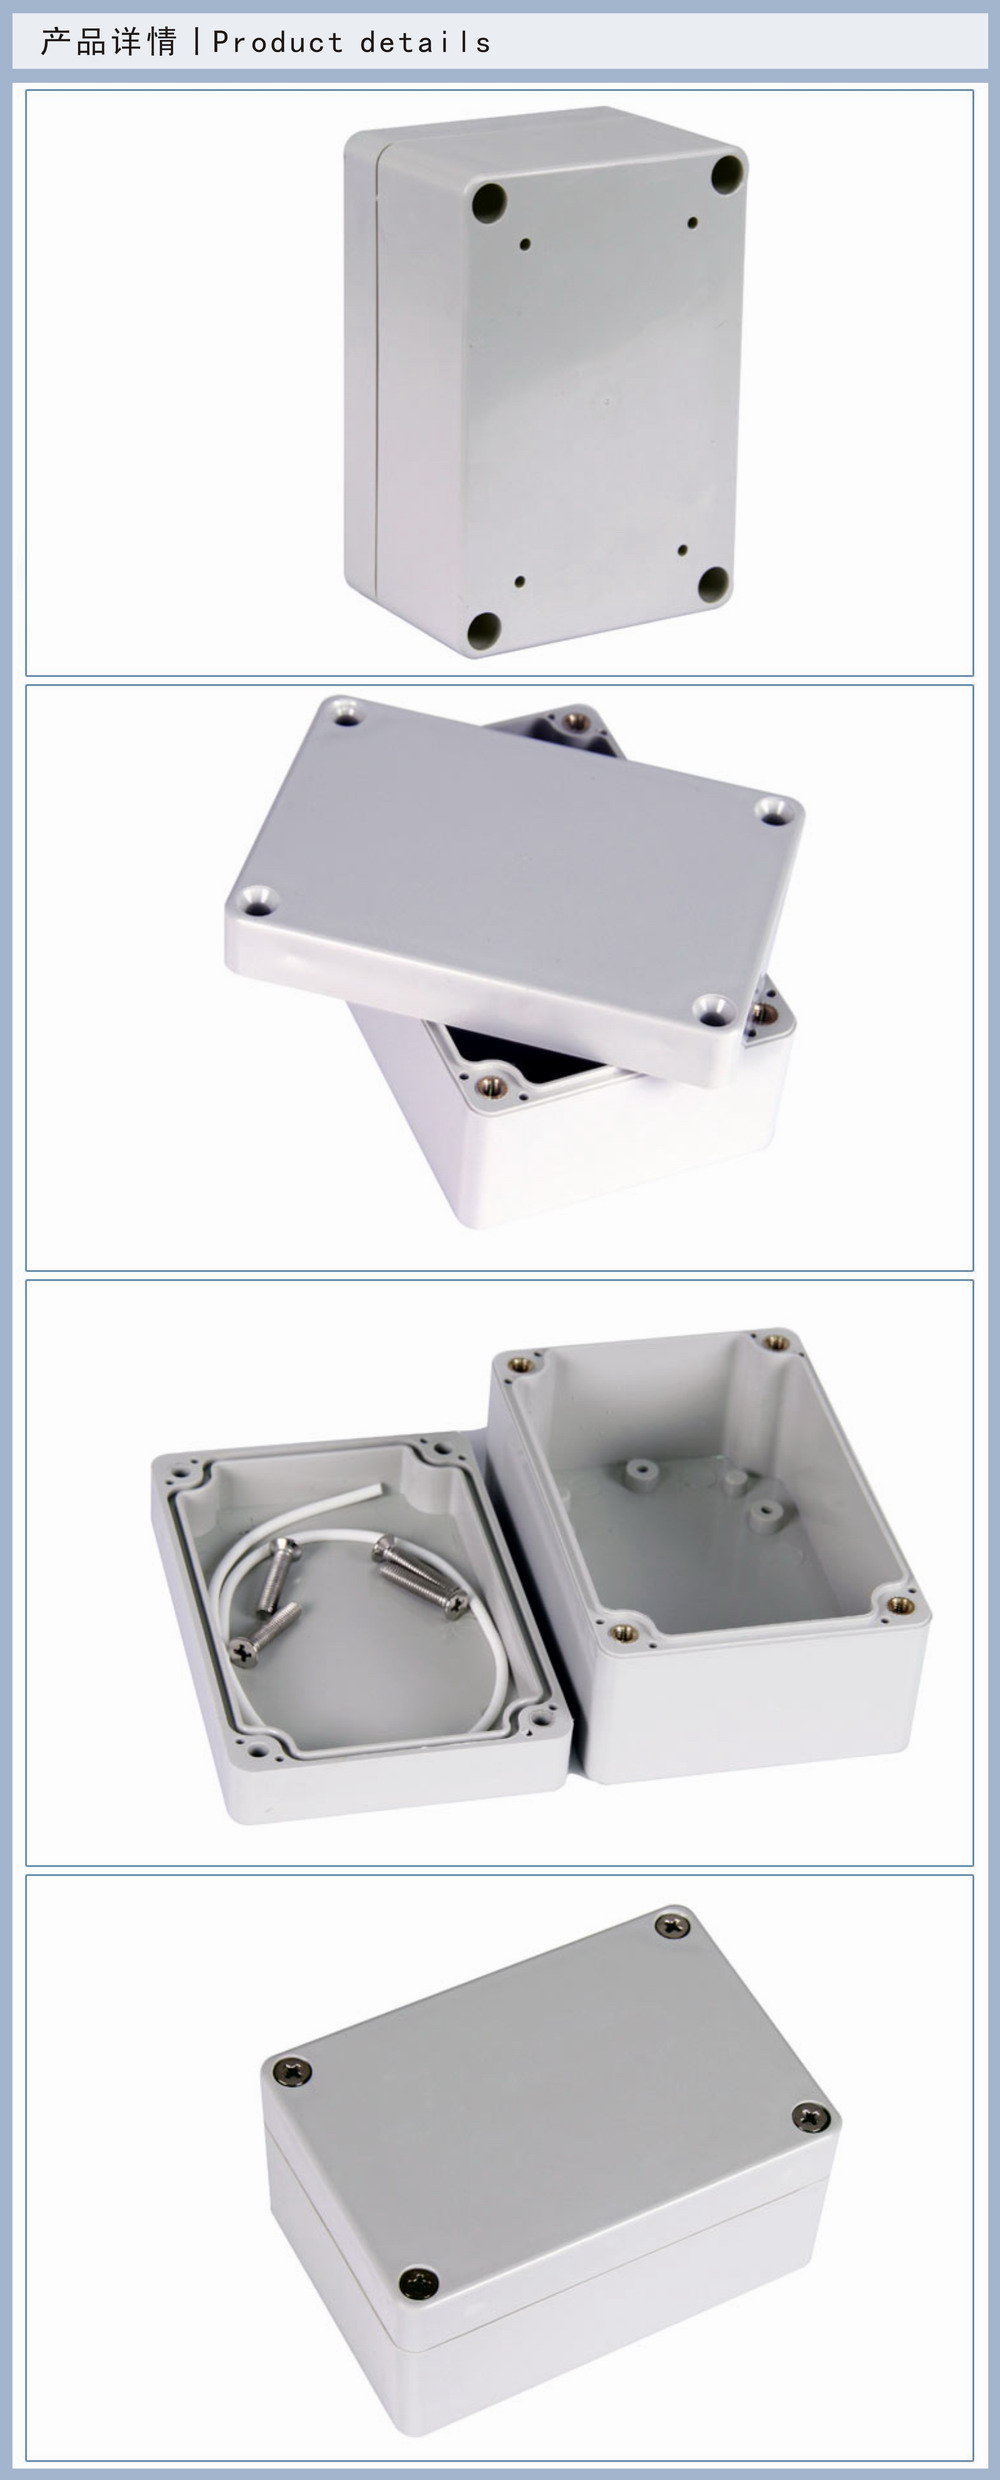 防水接线盒 防水控制盒 IP65接线盒  防水信号盒 防水盒,控制盒,IP65,接线盒,信号盒